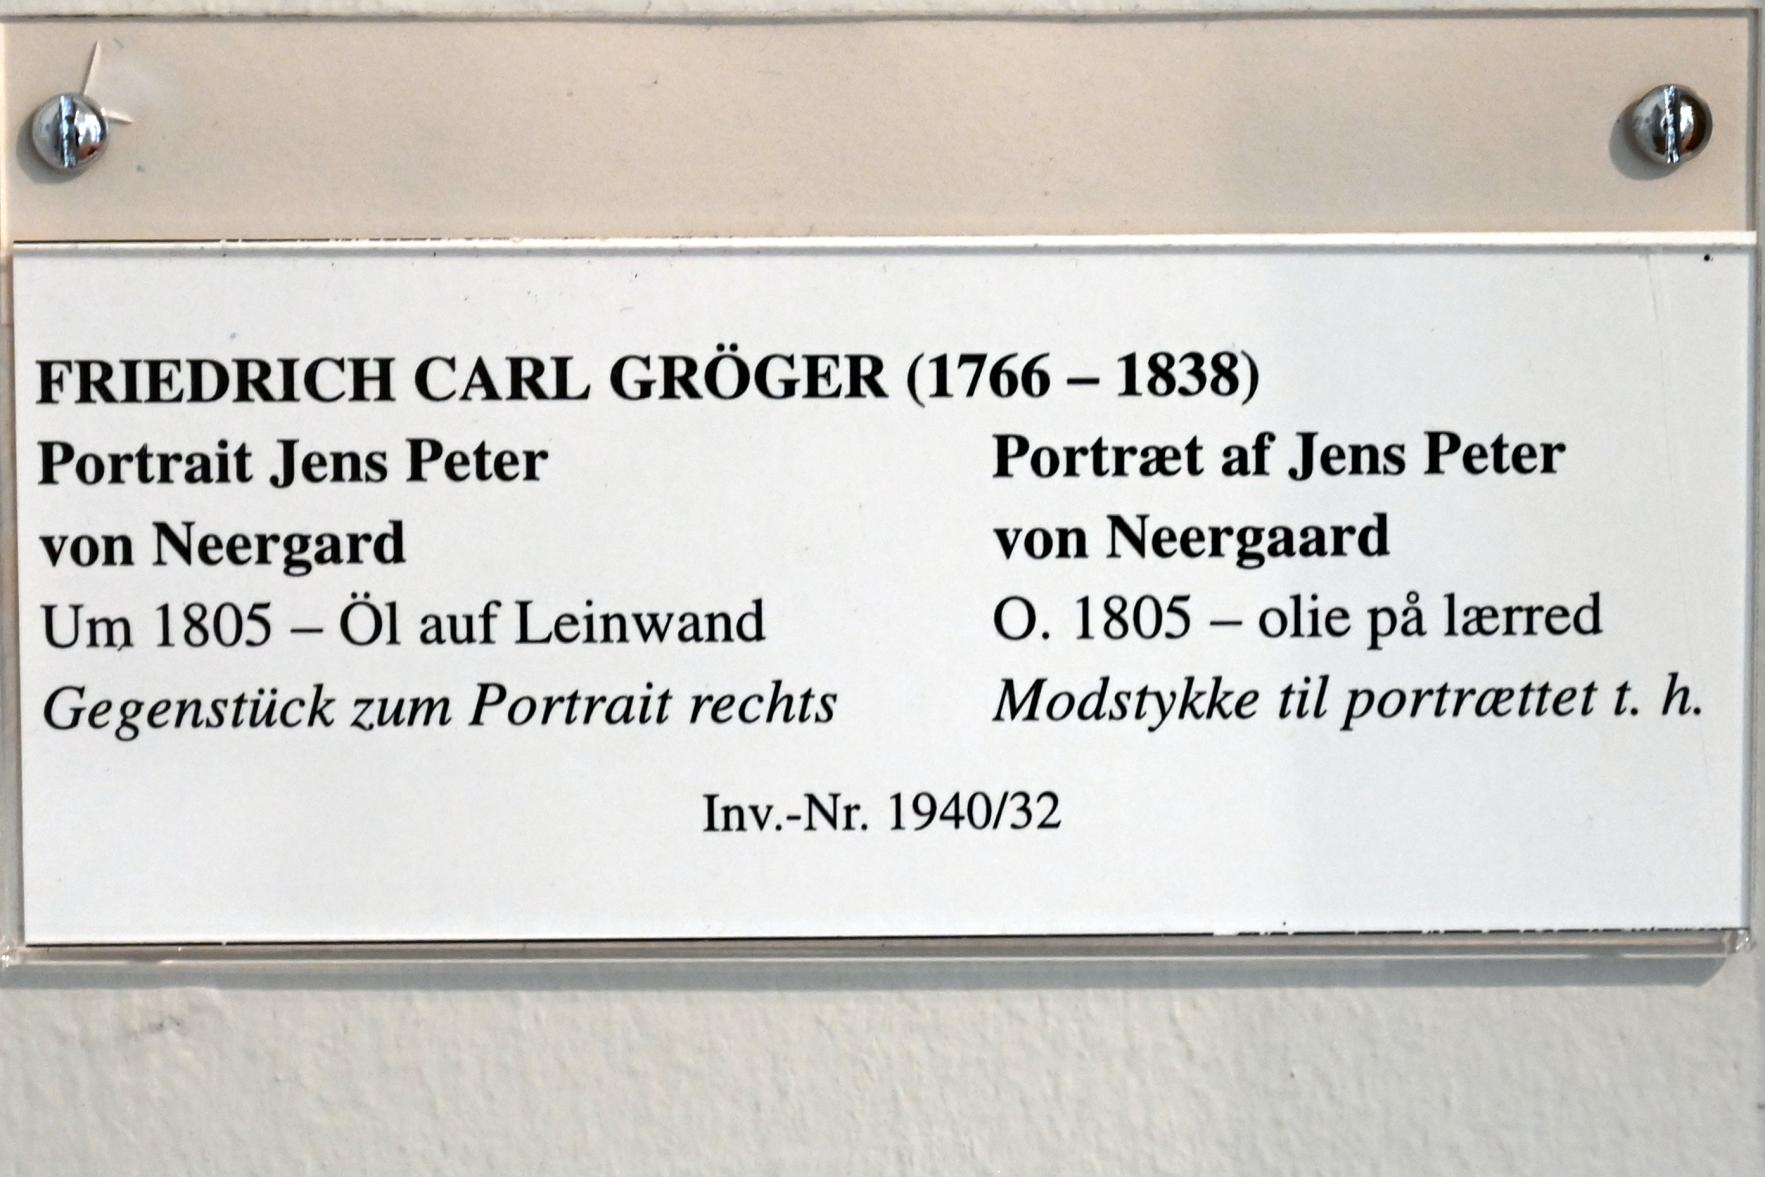 Friedrich Carl Gröger (1800–1838), Portrait Jens Peter von Neergard, Schleswig, Landesmuseum für Kunst und Kulturgeschichte, Saal 37, um 1805, Bild 2/2